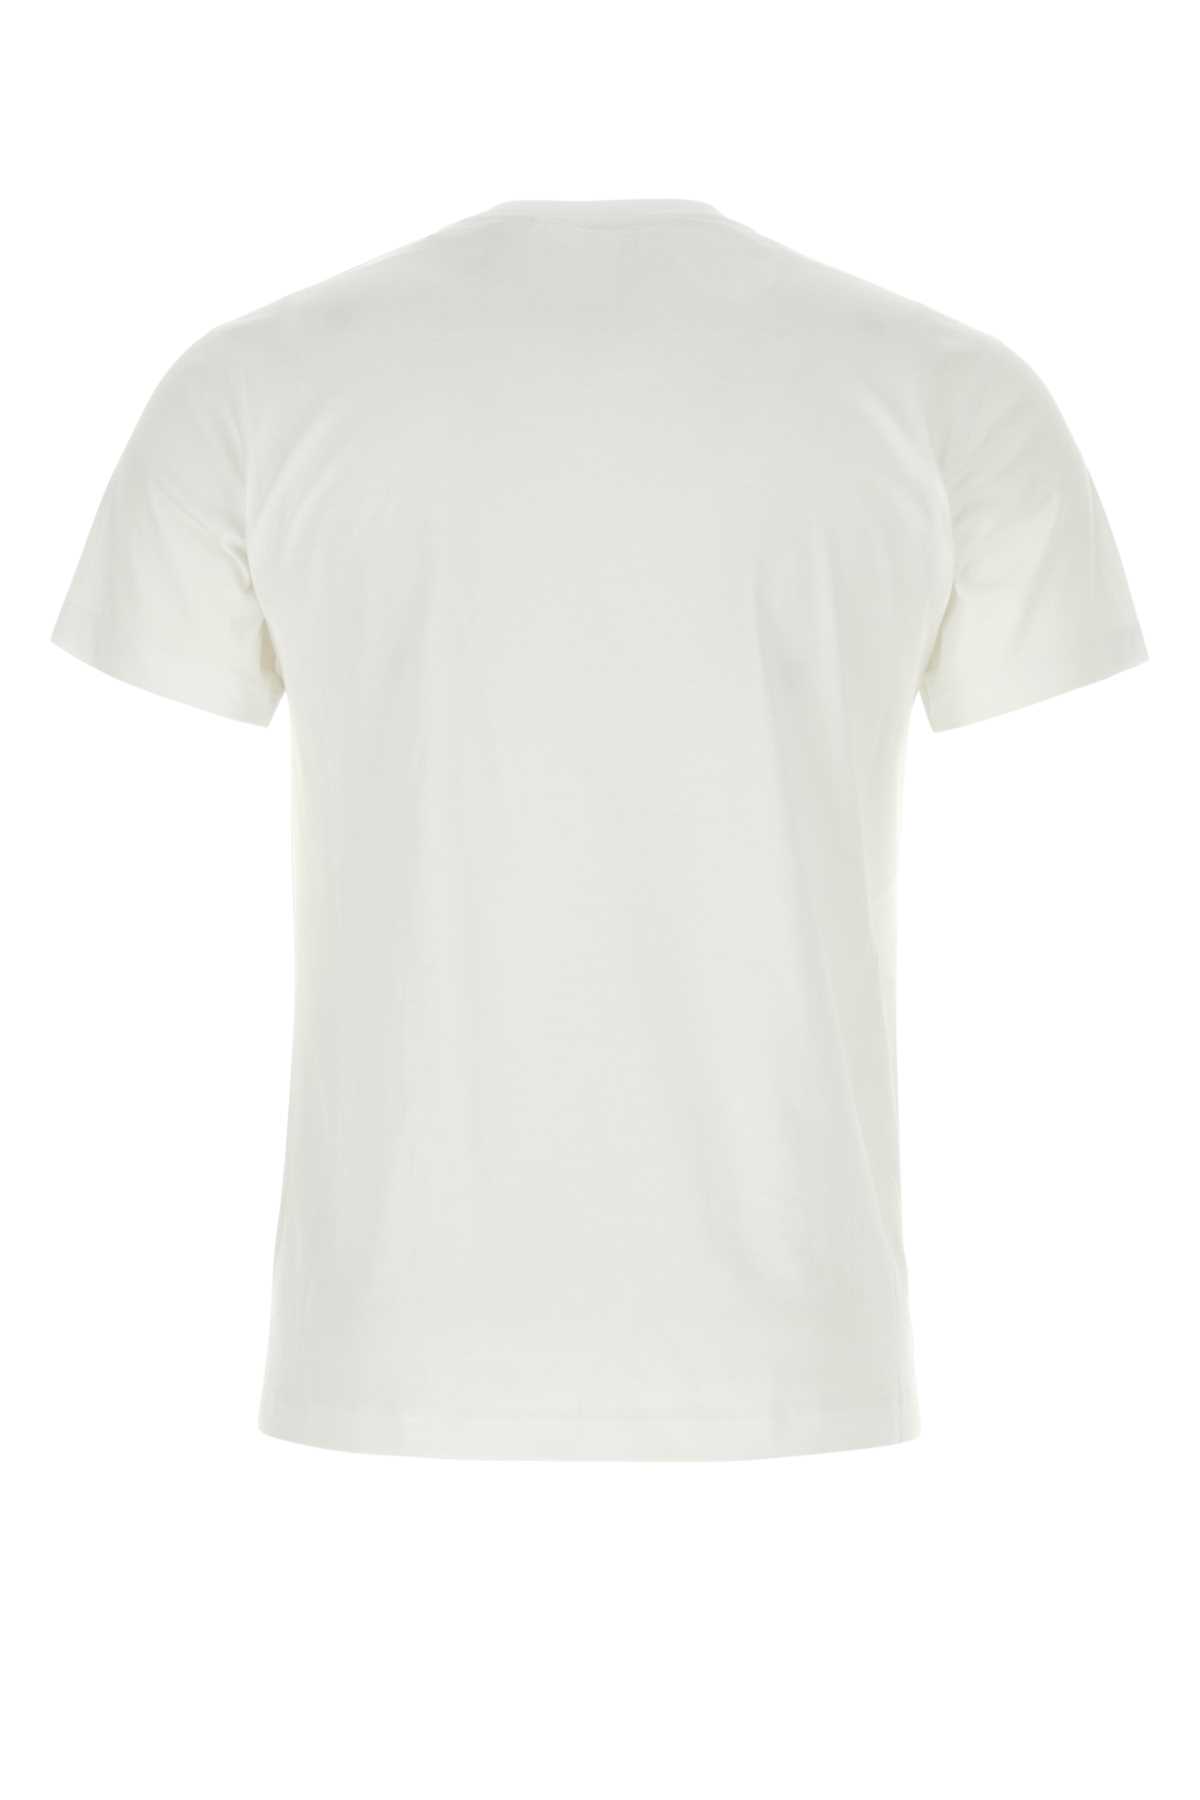 Shop Burberry White Cotton T-shirt